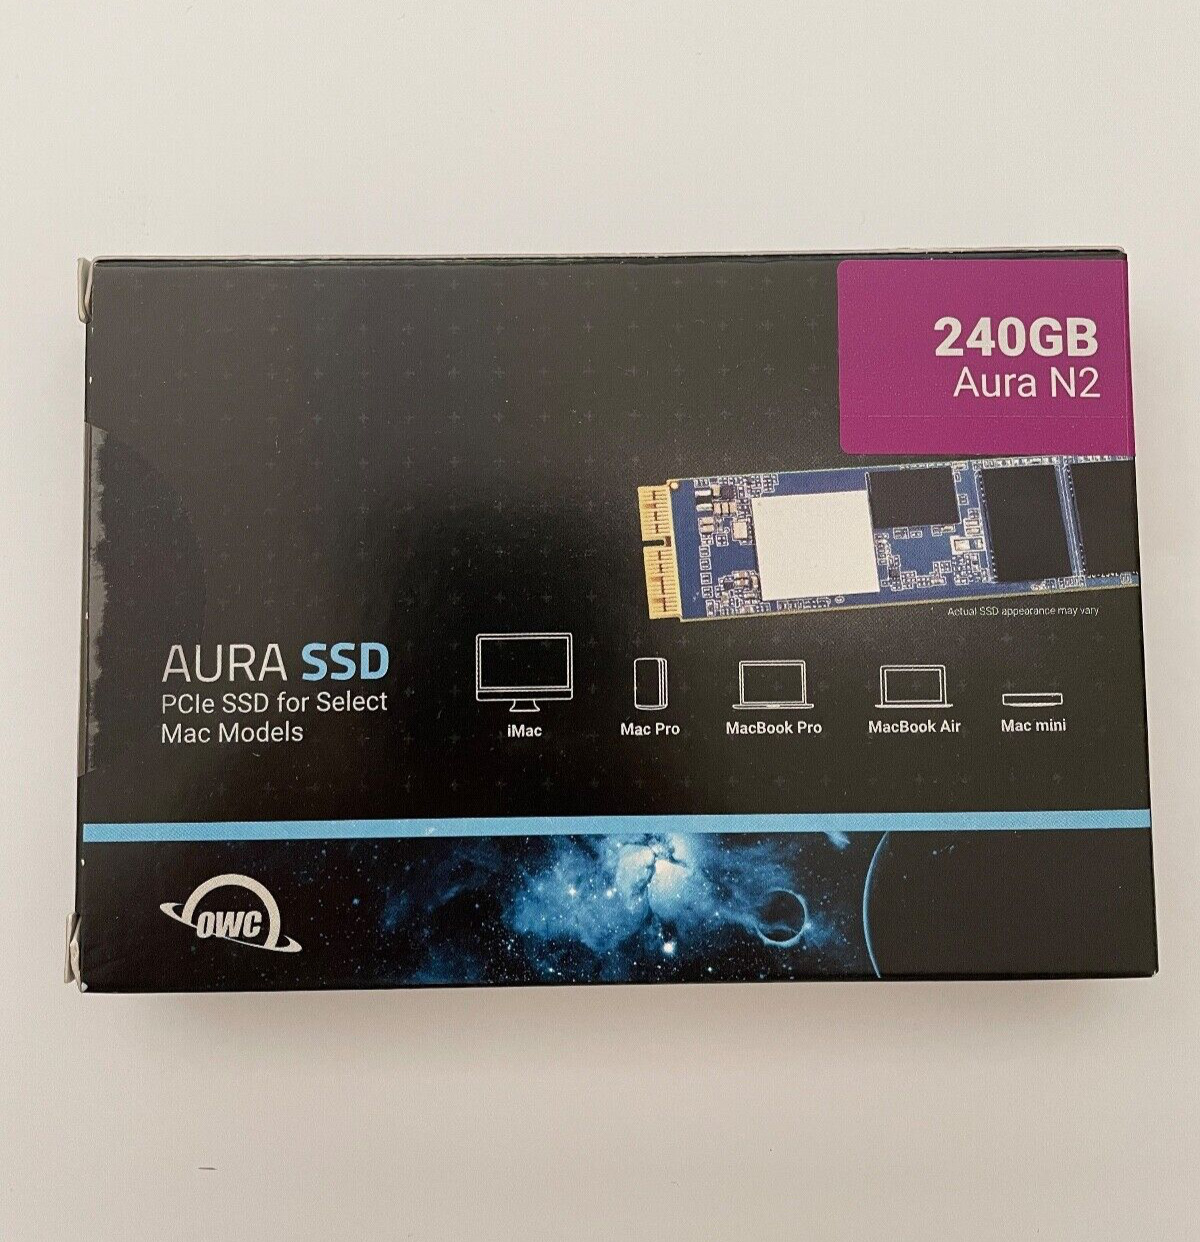 OWC 240GB Aura N2 SSD Drive